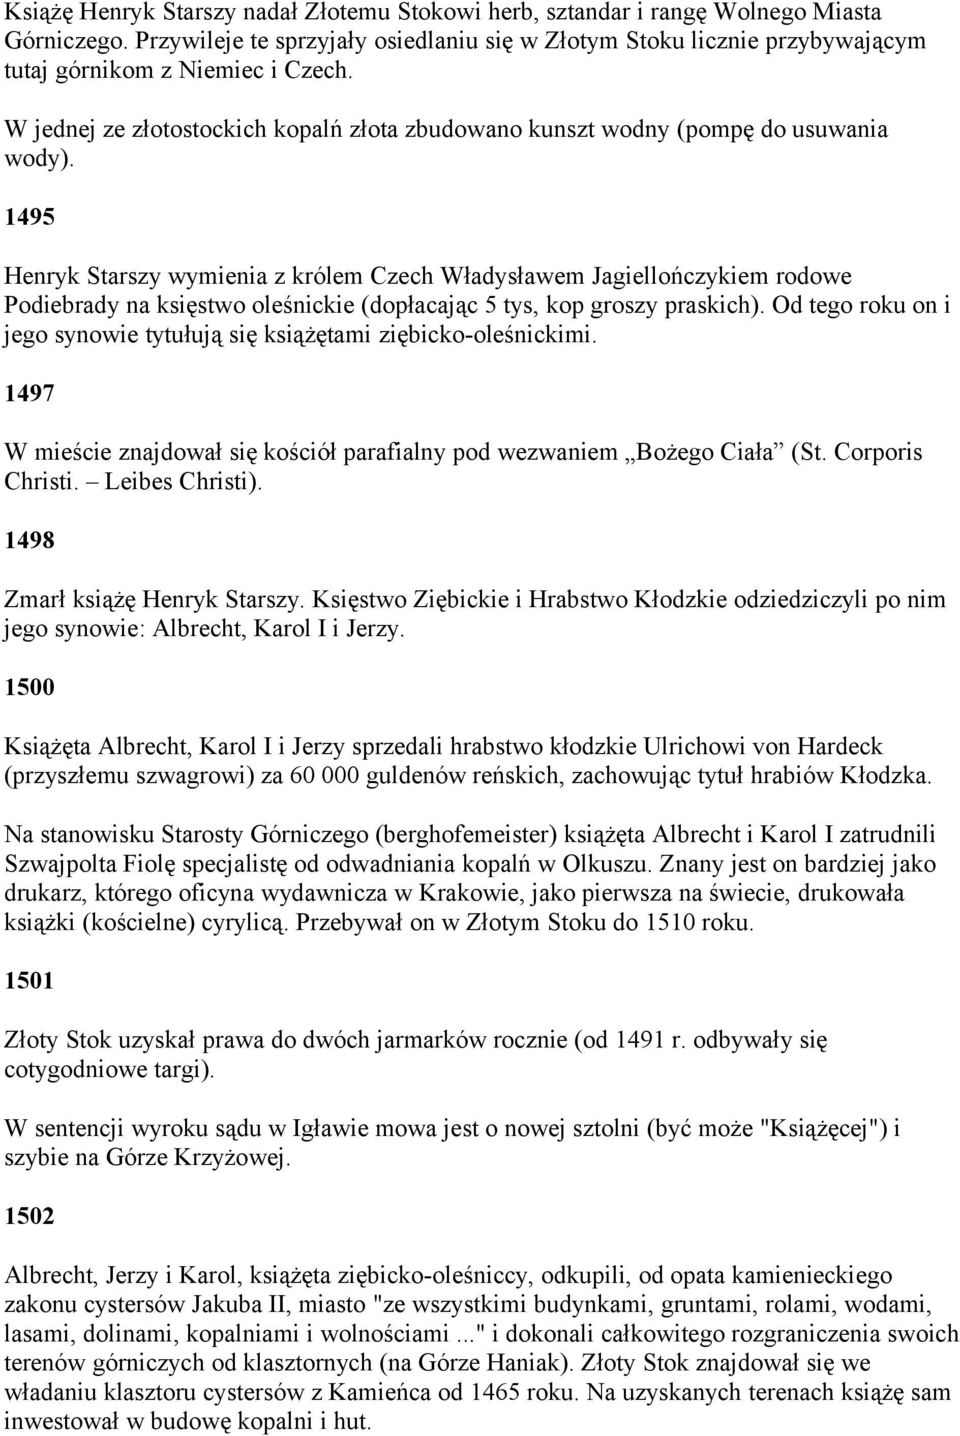 1495 Henryk Starszy wymienia z królem Czech Władysławem Jagiellończykiem rodowe Podiebrady na księstwo oleśnickie (dopłacając 5 tys, kop groszy praskich).